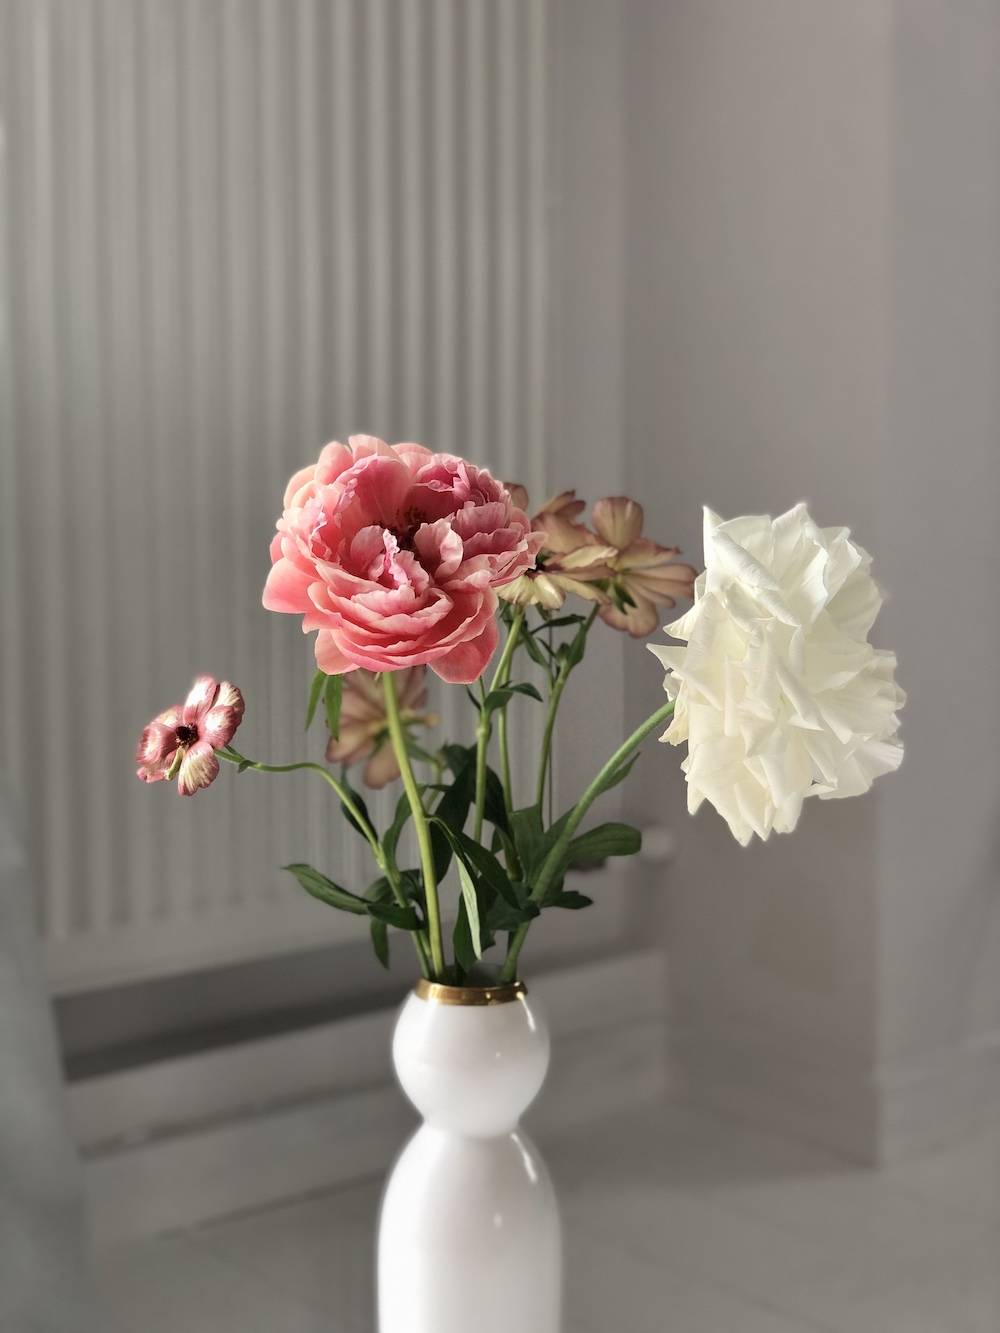 Kwiaty zawsze obecne były w moim życiu, tu świeża dostawa od Ani „Kwiaciary” w ramach akcji #kwiatemwwirusa (Fot. archiwum prywatne)